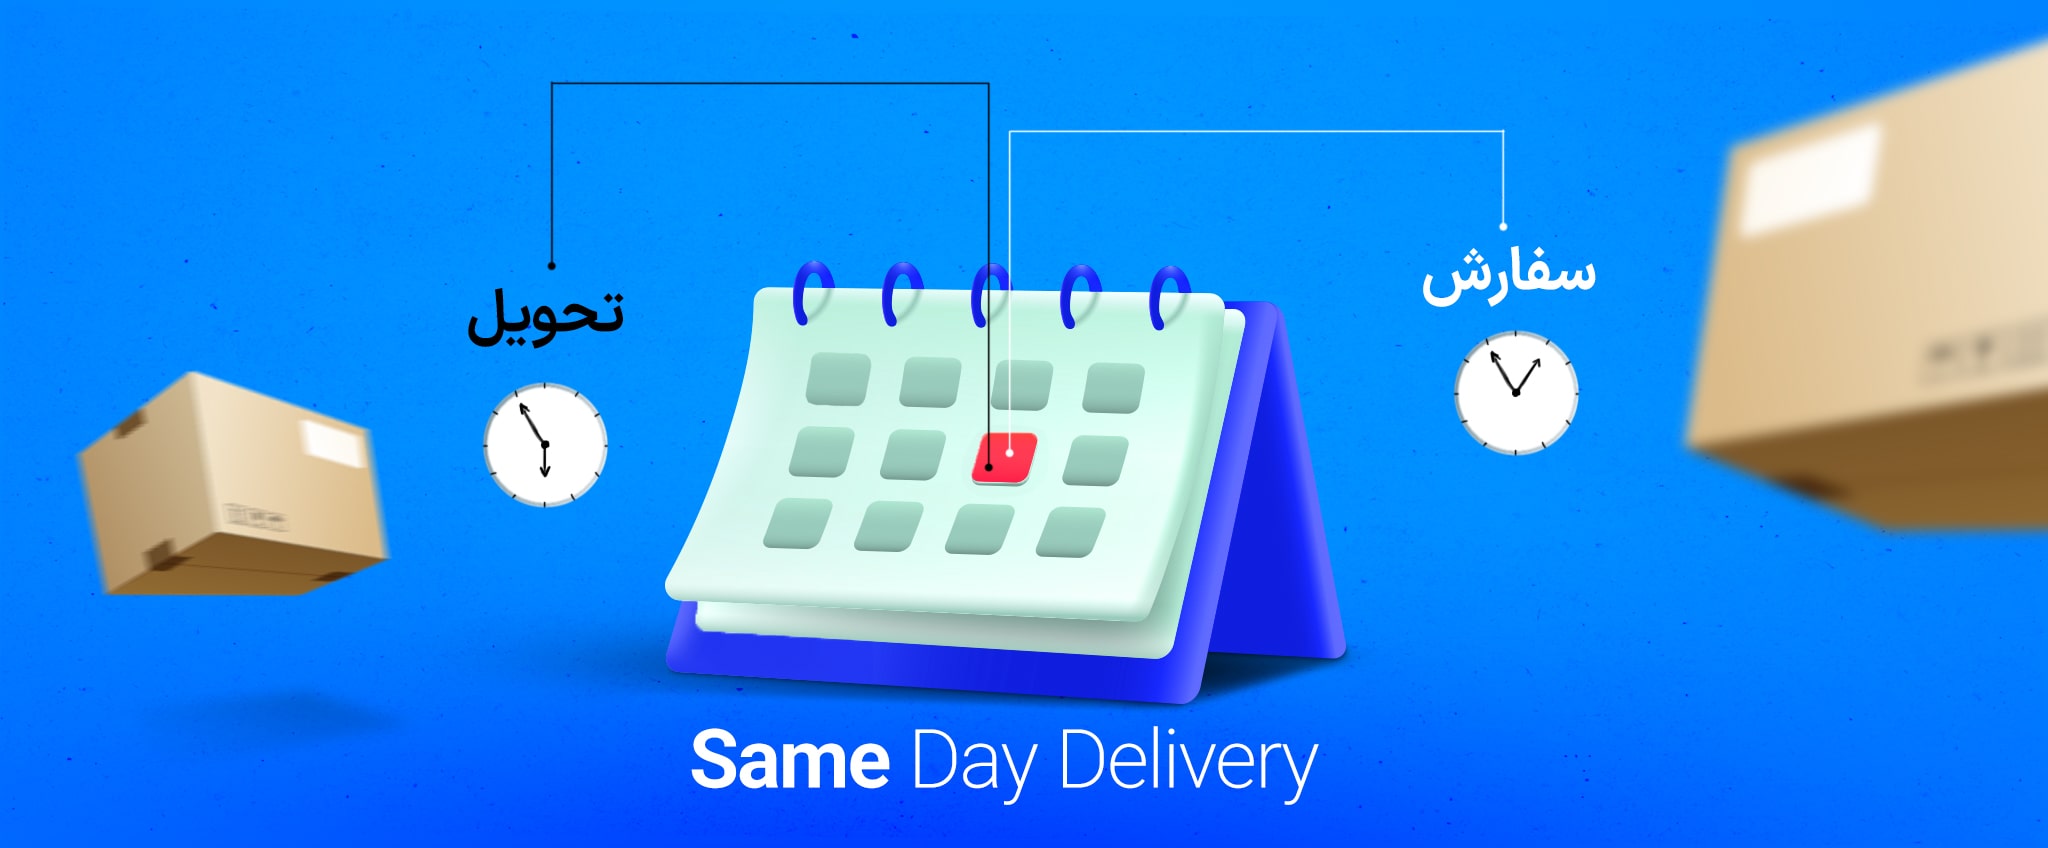 تحویل در همان روز به این معنی است که مشتریان بسته‌های خود را در همان روزی که آن‌ها را سفارش می‌دهند، دریافت می‌کنند.